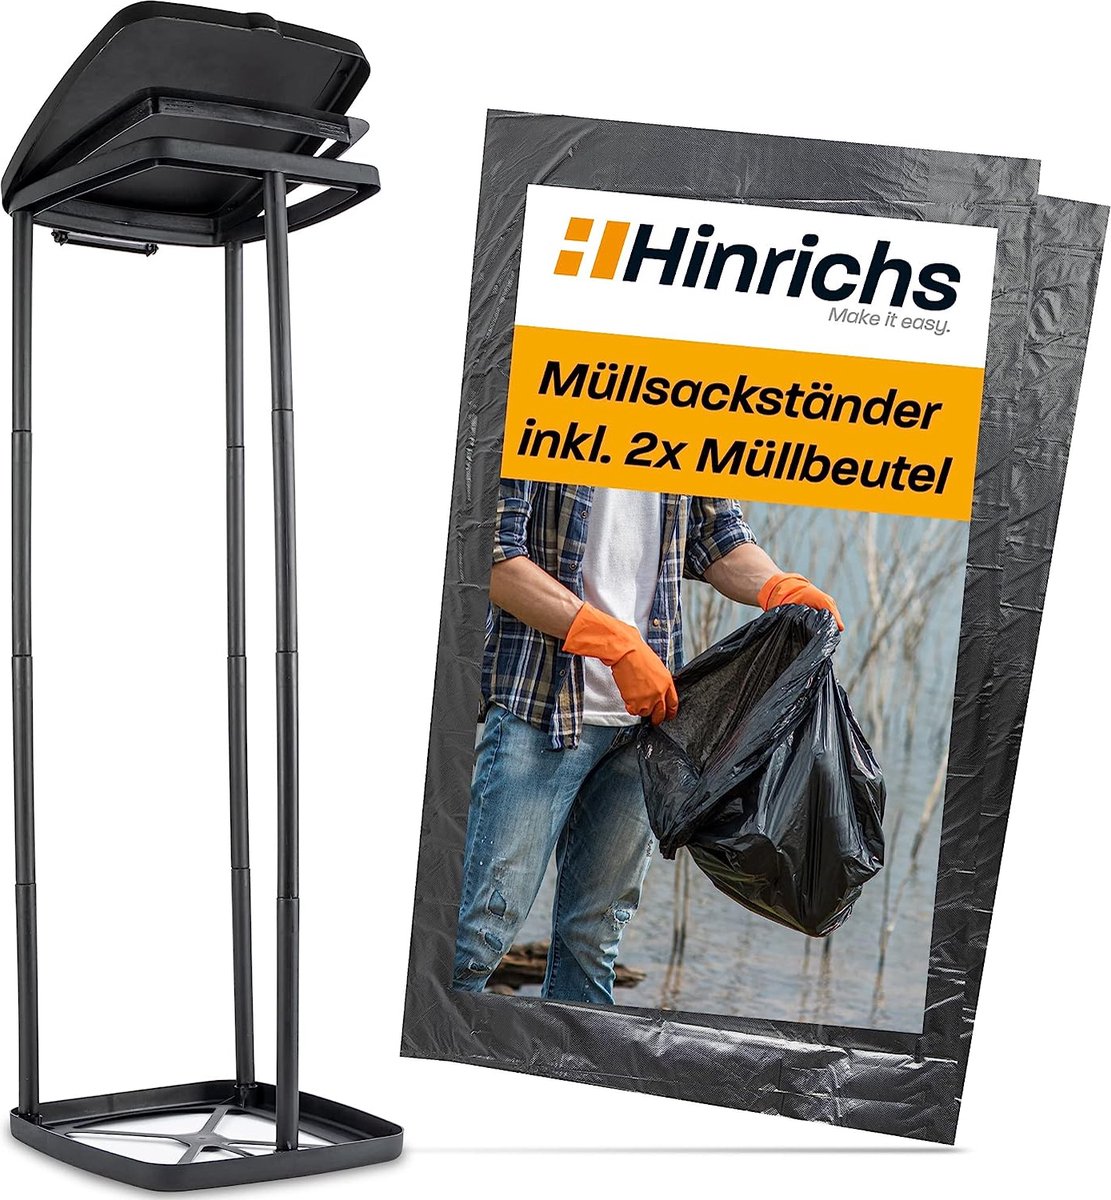 Hinrichs Vuilniszakstandaard, 120 liter, in hoogte verstelbare vuilniszakhouder met deksel en klemring, standaard gele zak, gratis 2 zwarte afvalzakken van 120 liter